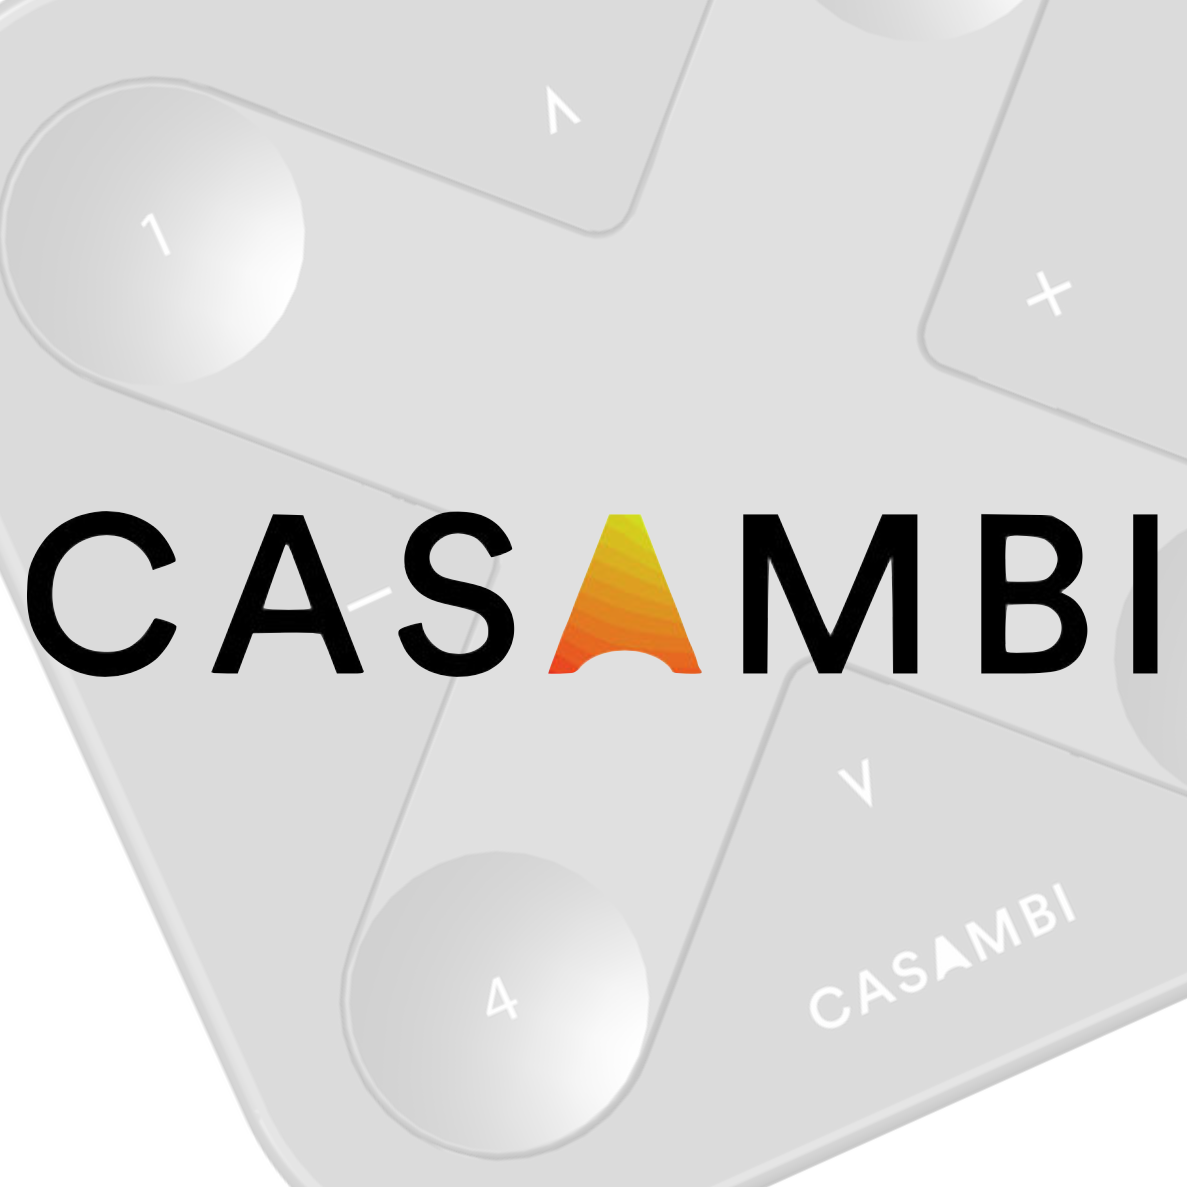 Casambi